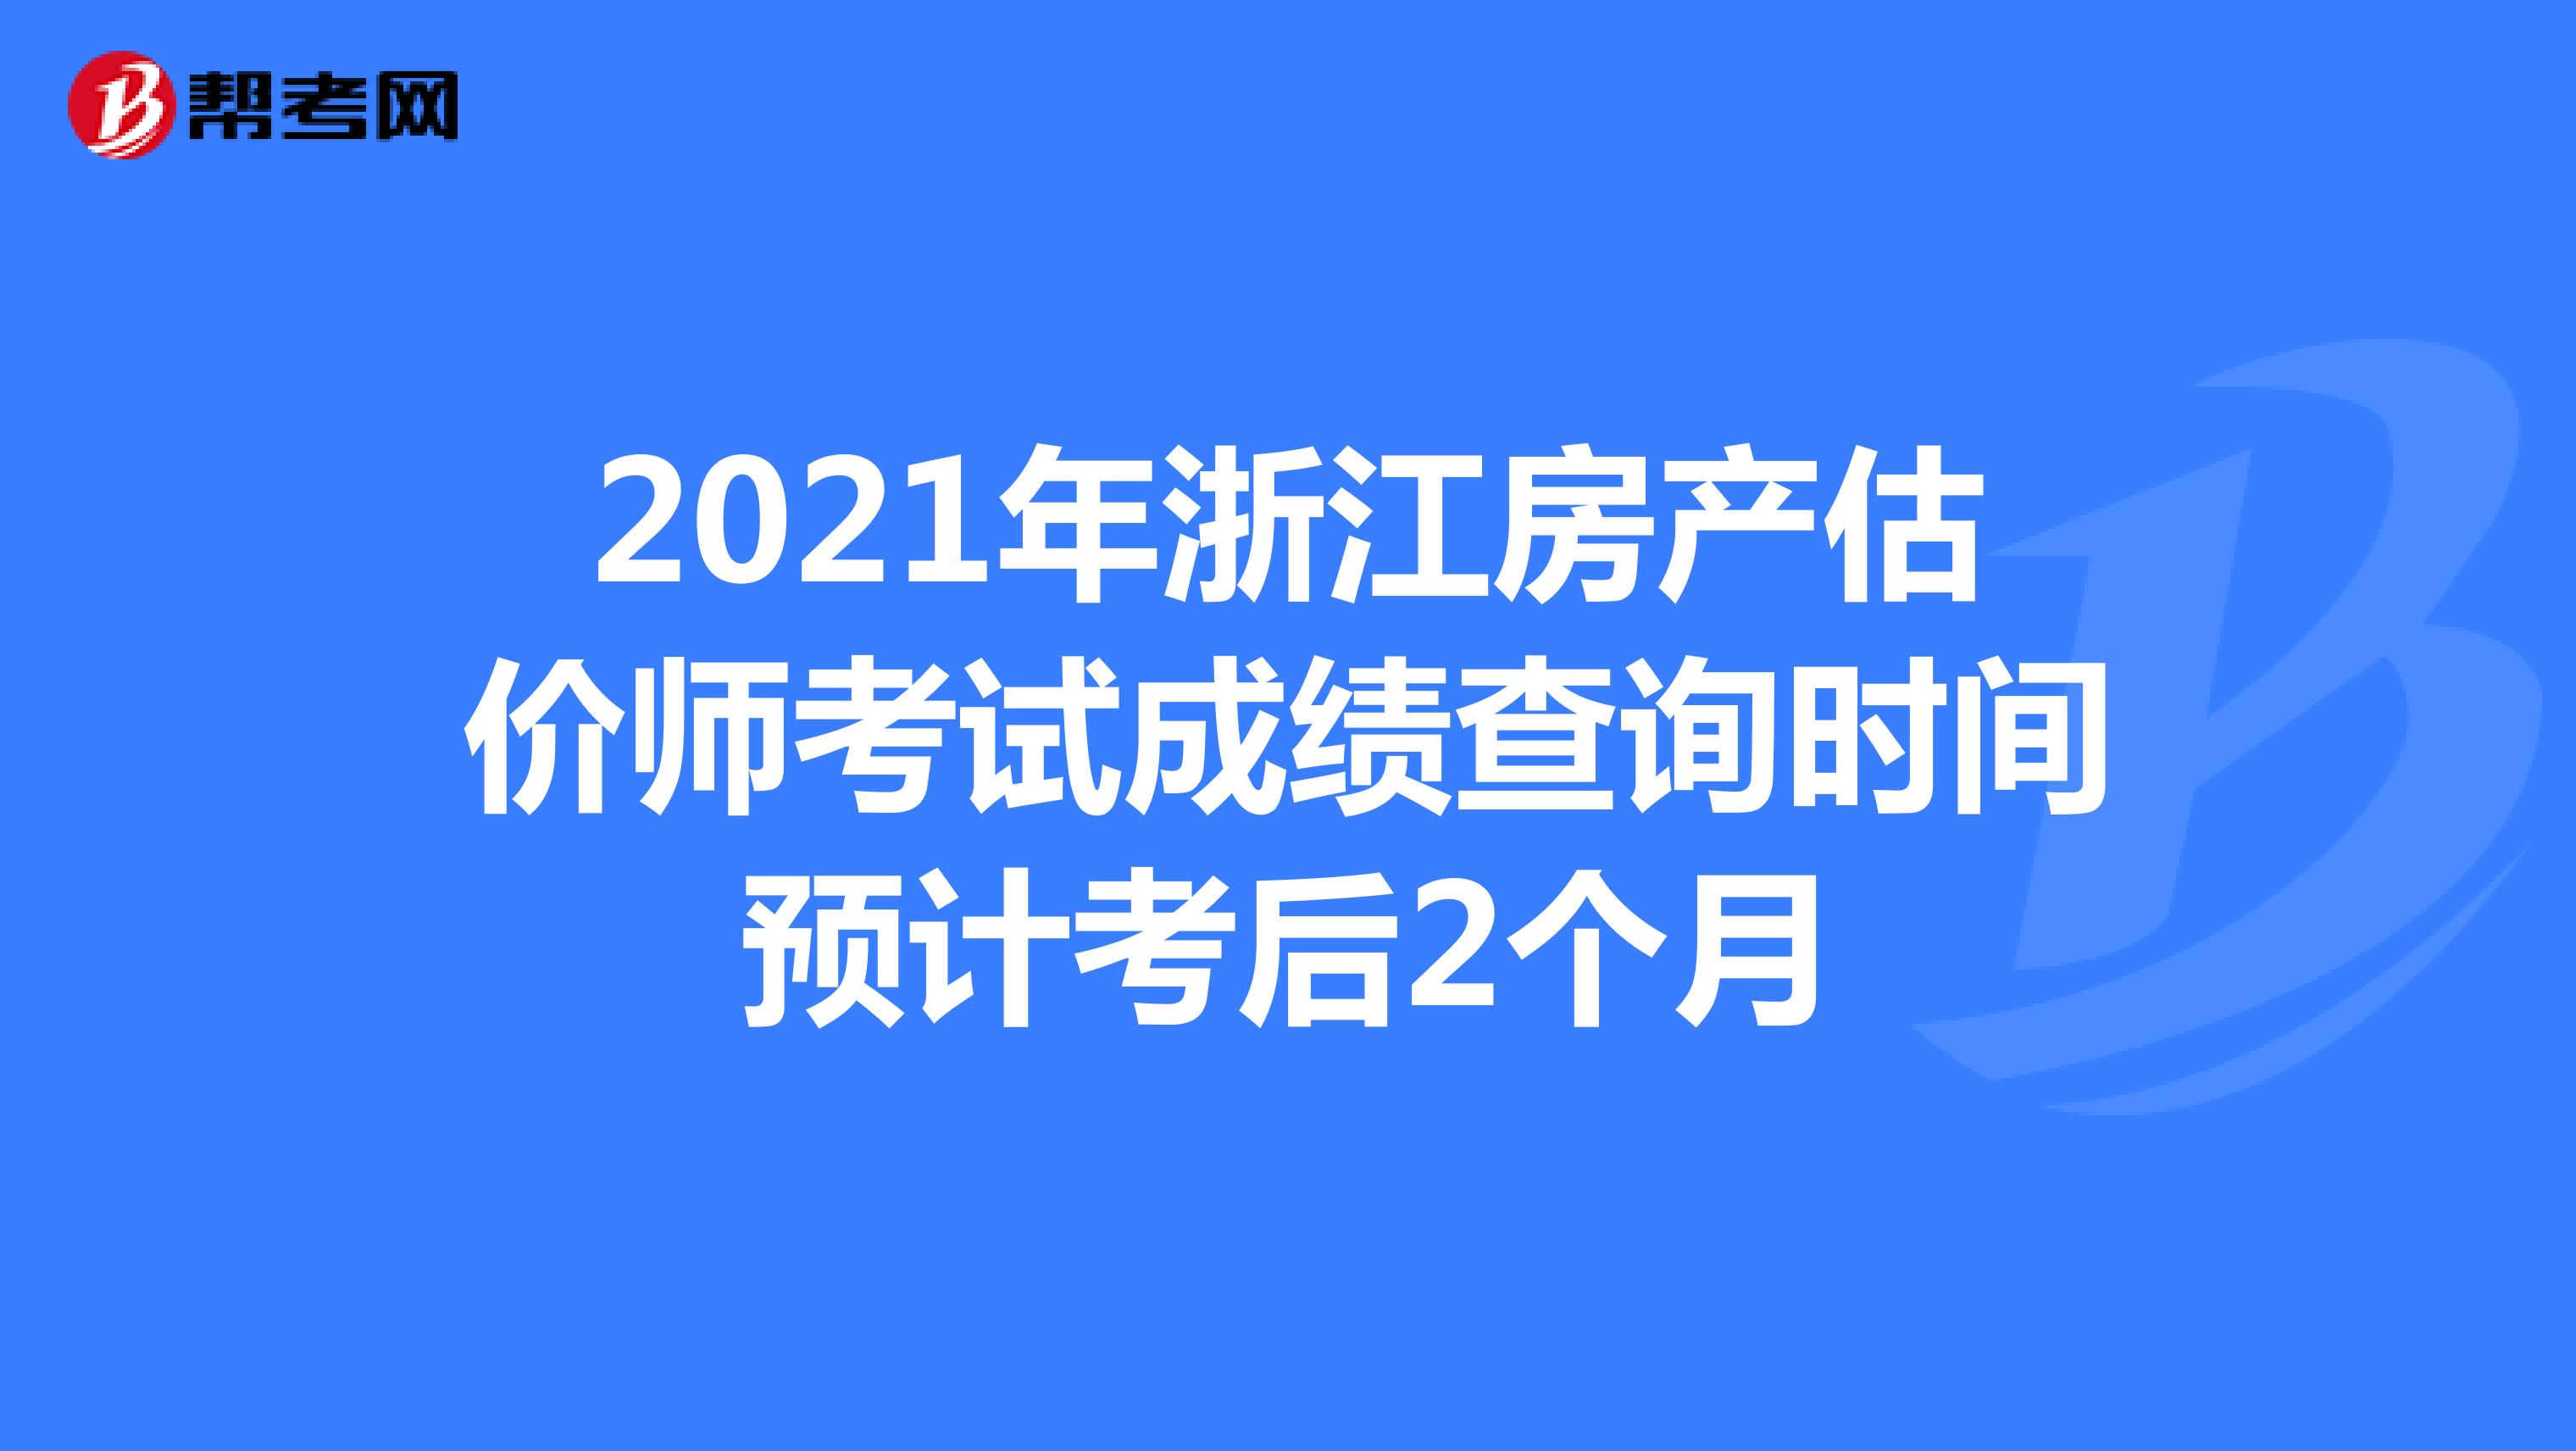 2021年浙江房产估价师考试成绩查询时间预计考后2个月